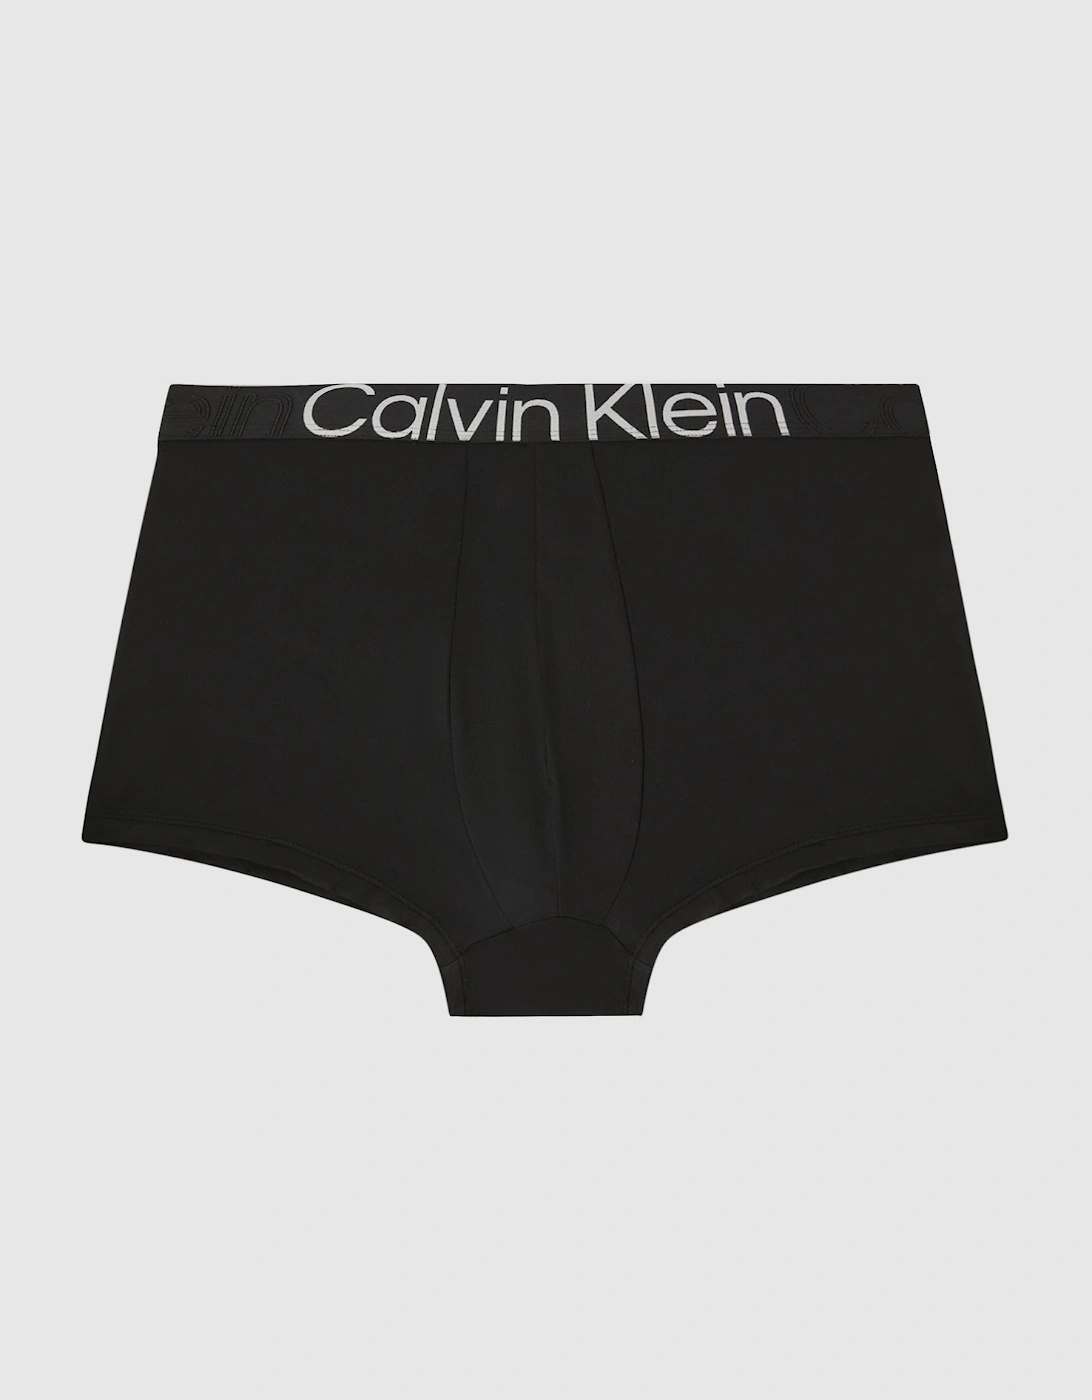 Calvin Klein Underwear Low Rise Trunk, 2 of 1